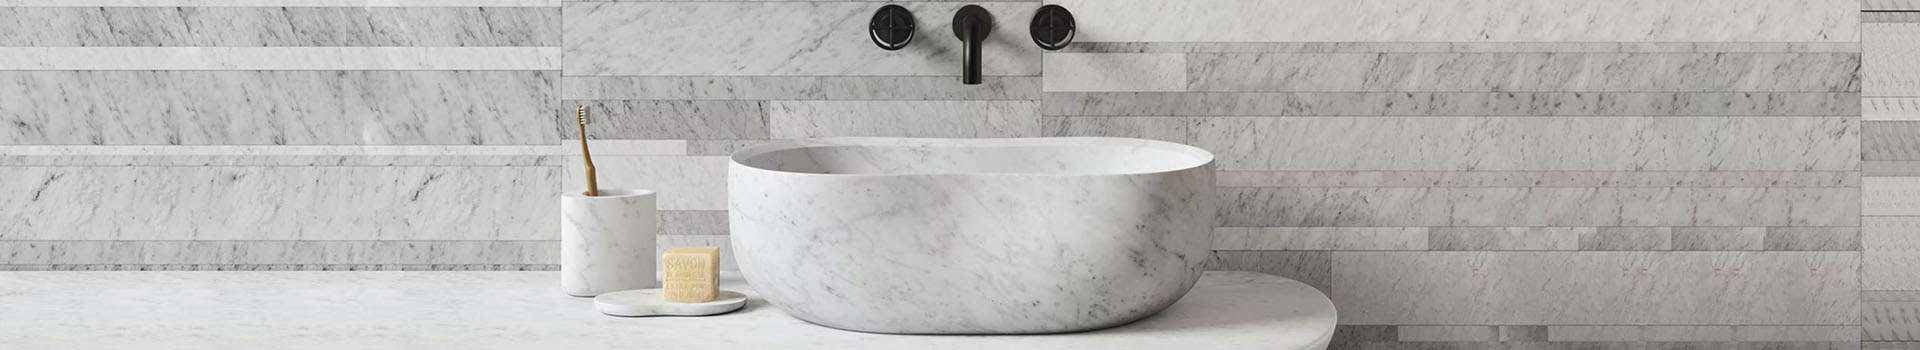 Grey Riverstone Bathroom Washing Basins Bowl